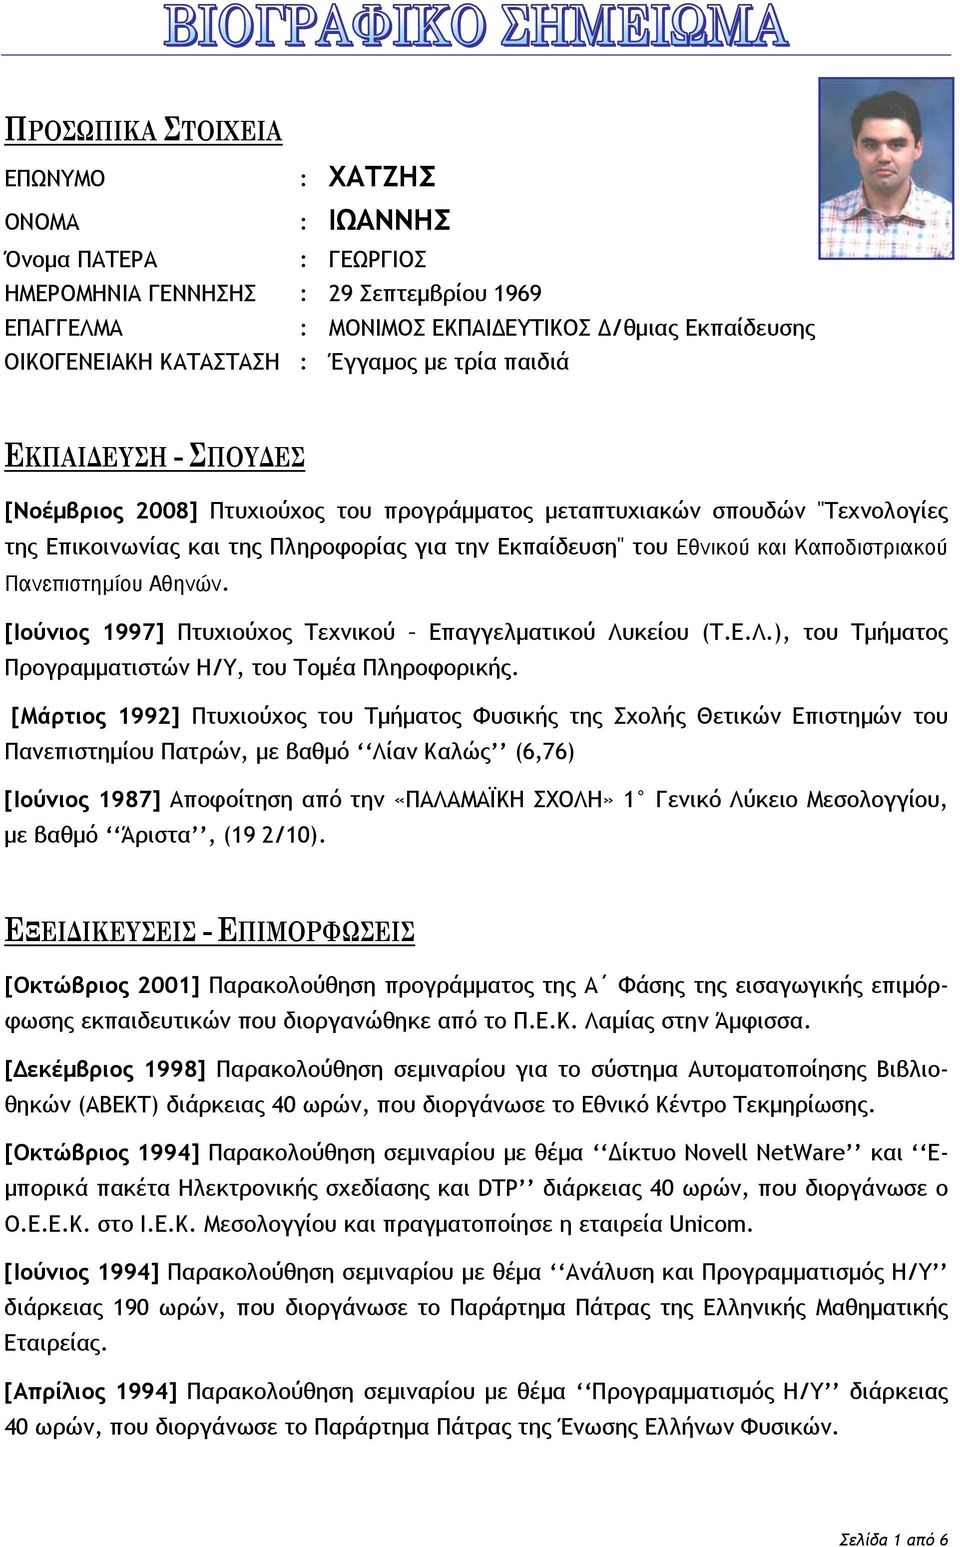 Καποδιστριακού Πανεπιστημίου Αθηνών. [Ιούνιος 1997] Πτυχιούχος Τεχνικού Επαγγελματικού Λυκείου (Τ.Ε.Λ.), του Τμήματος Προγραμματιστών Η/Υ, του Τομέα Πληροφορικής.